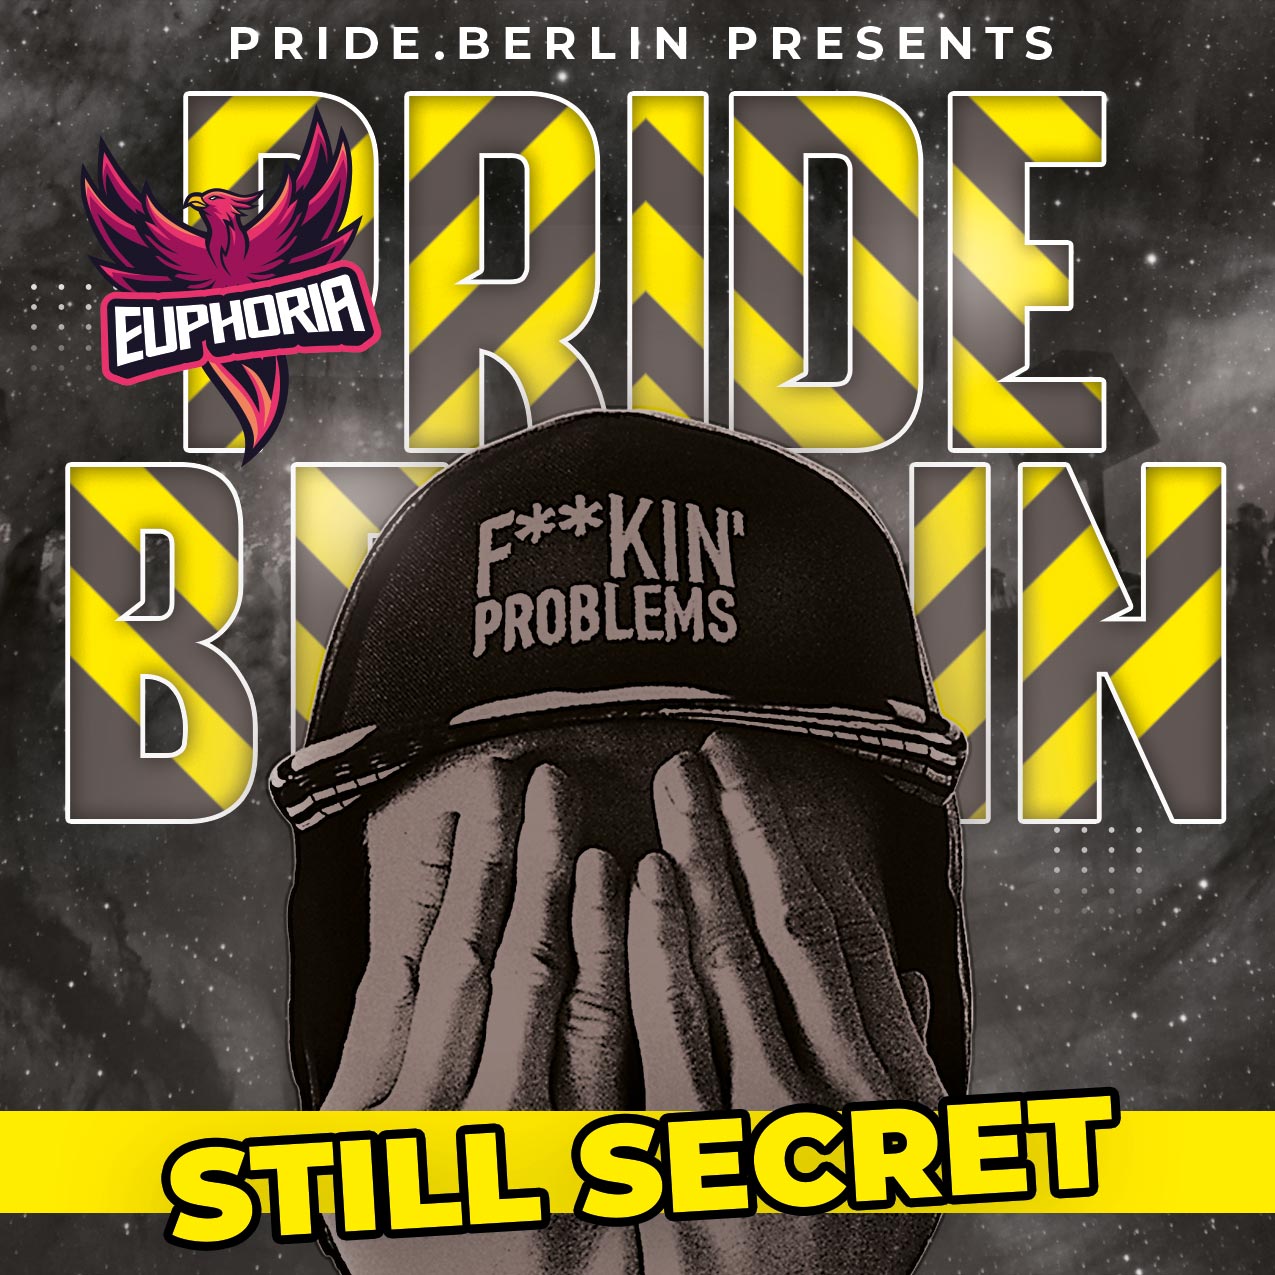 PRIDE PARTY BERLIN DJ Still secret